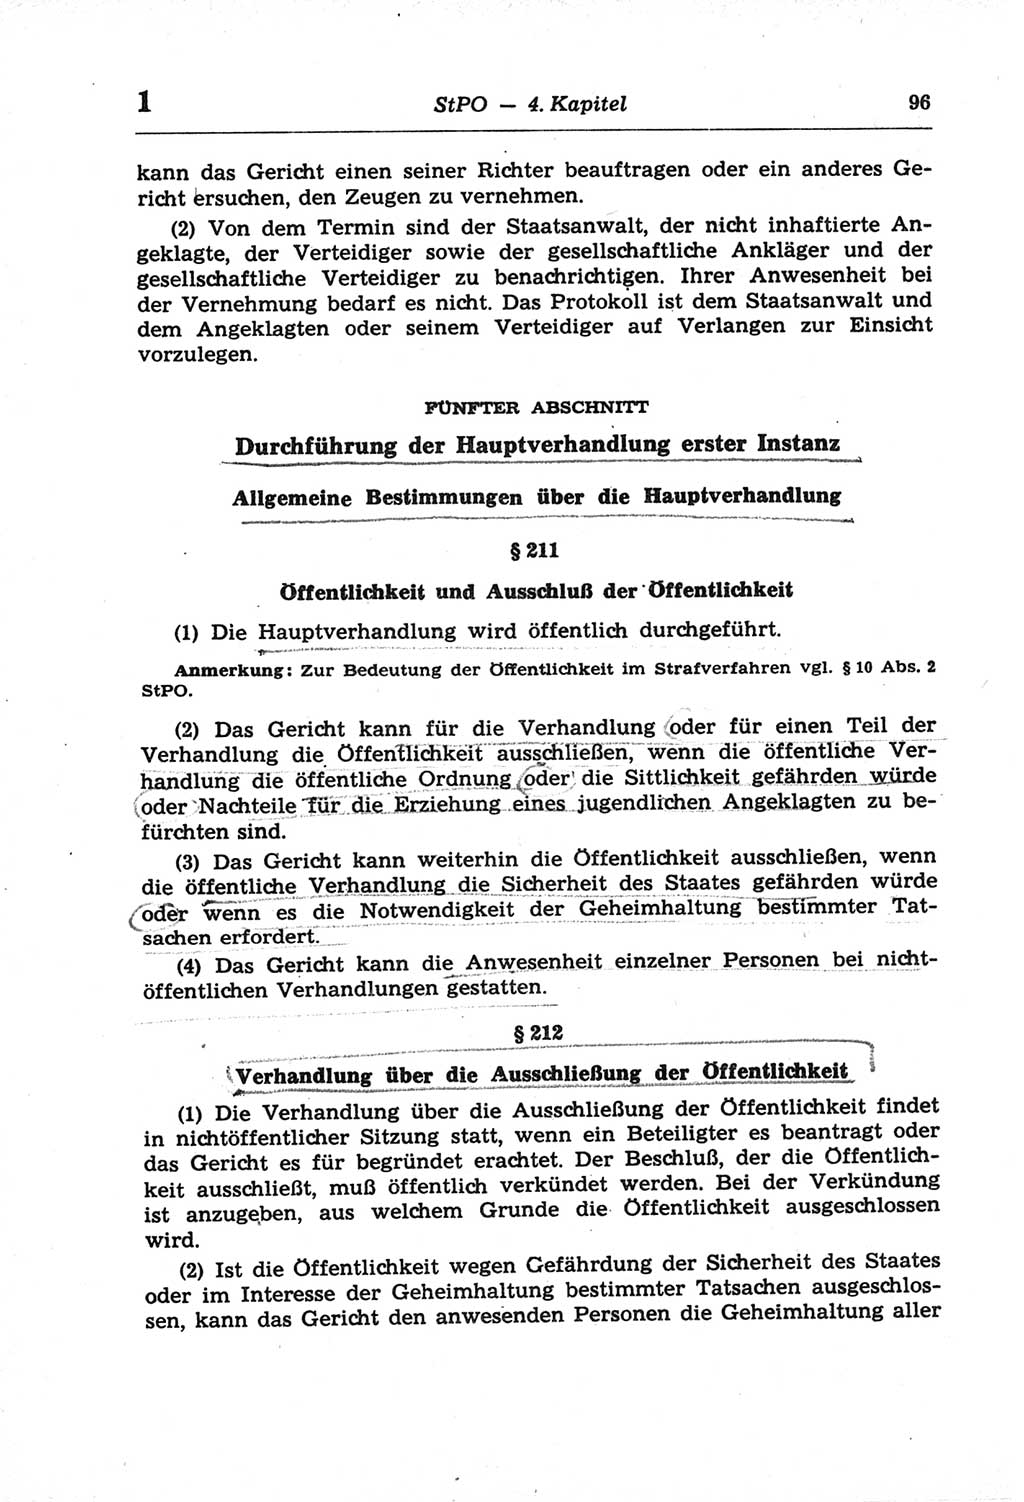 Strafprozeßordnung (StPO) der Deutschen Demokratischen Republik (DDR) und angrenzende Gesetze und Bestimmungen 1968, Seite 96 (StPO Ges. Bstgn. DDR 1968, S. 96)